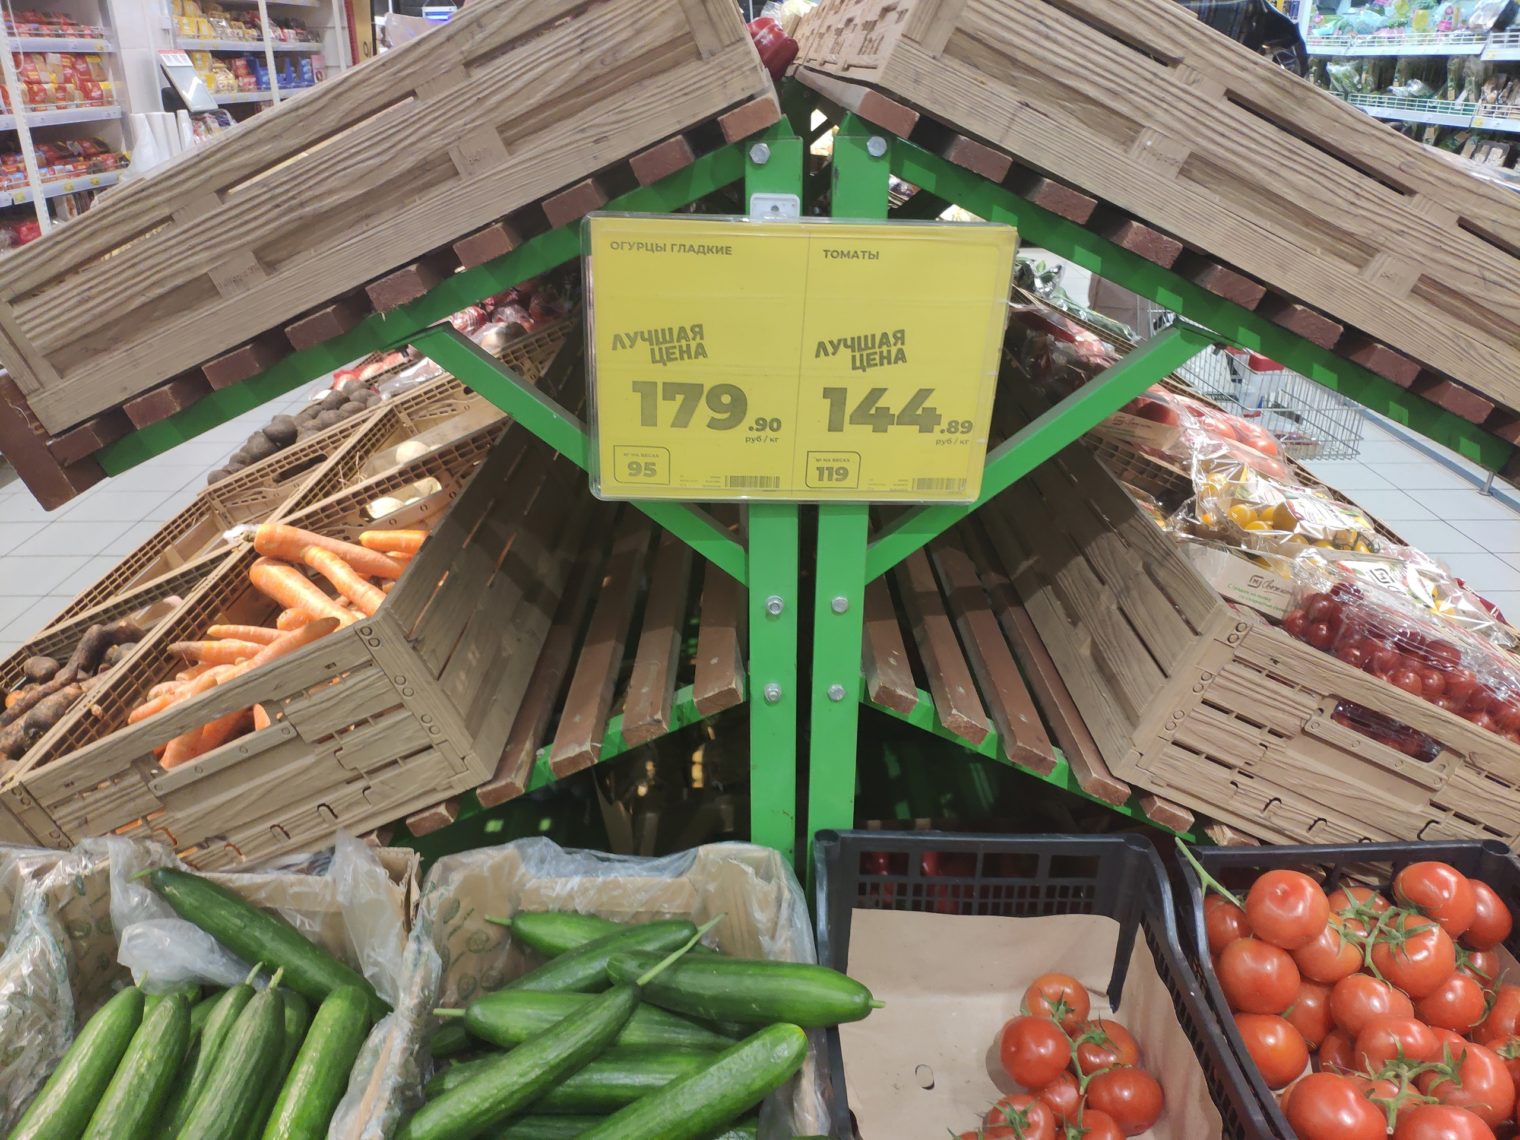 Цены на огурцы и гречку внезапно изменились в магазинах Магнитогорска. А лук по стоимости сравнялся с бананами